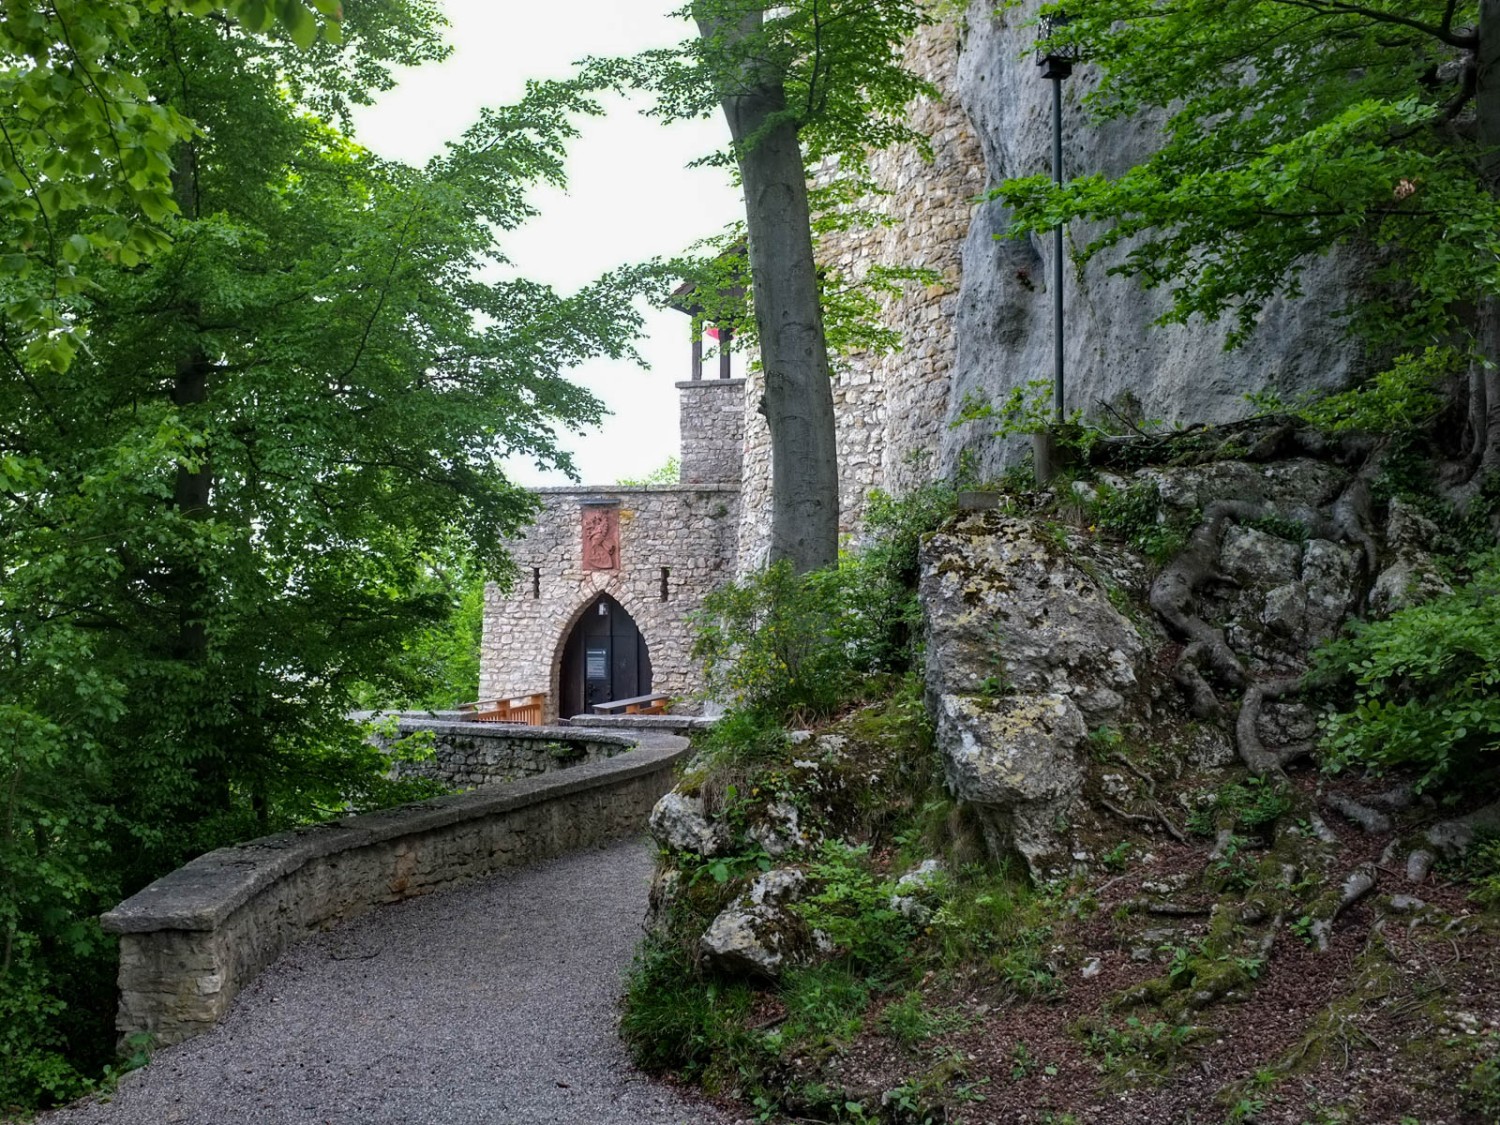 Le château a été sculpté dans un éperon rocheux escarpé. Photo: Claudia Peter